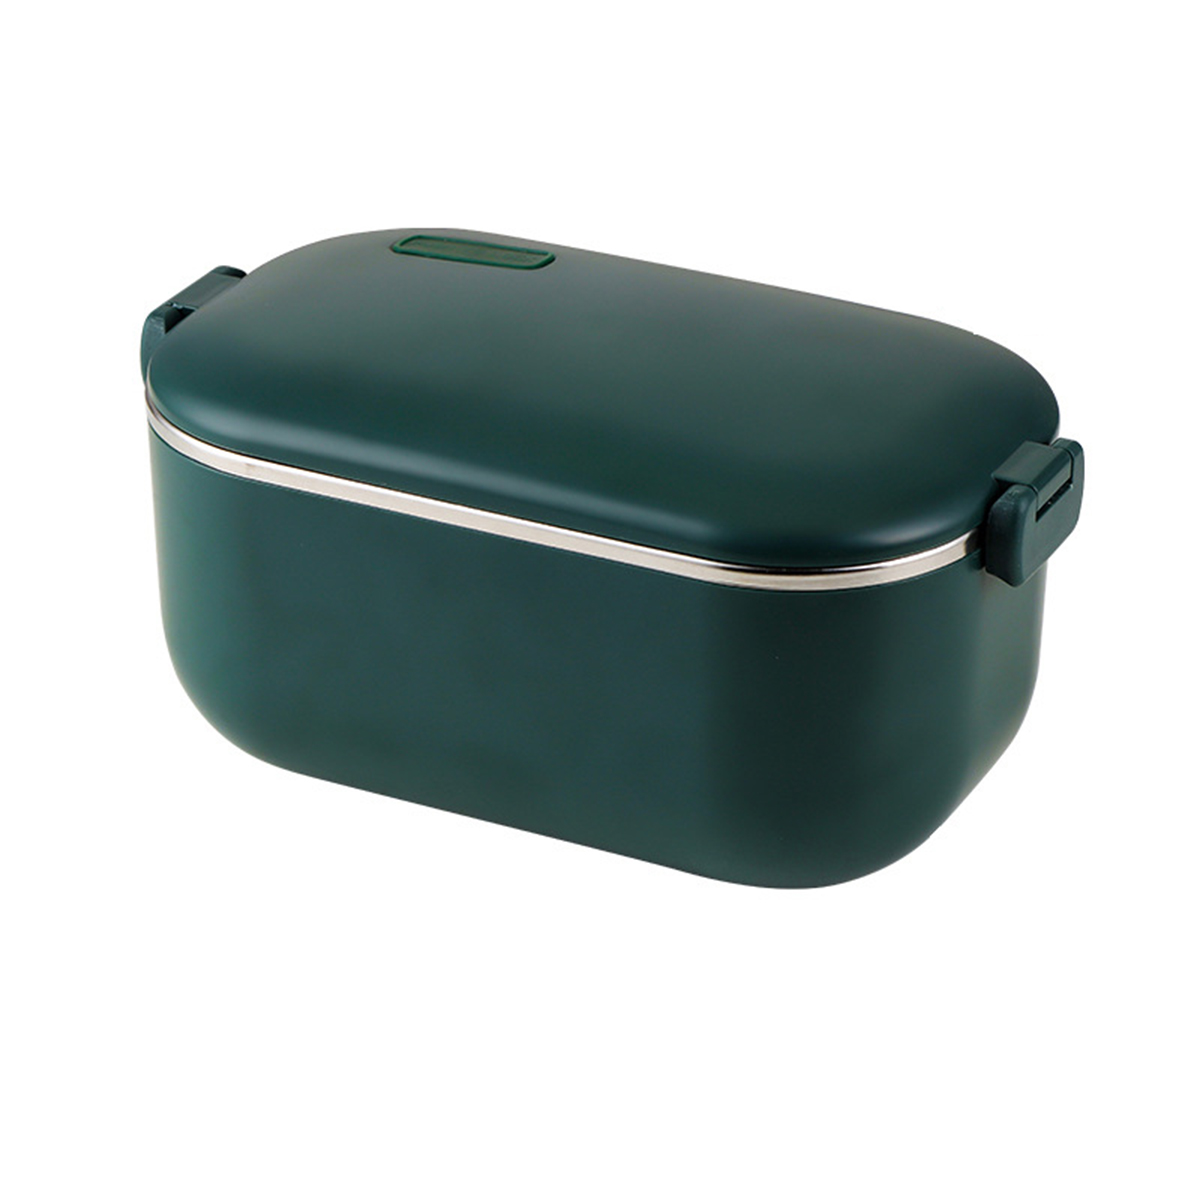 BYTELIKE elektrische Brotdose wasserfrei verdickt Wärmeisolierung Lunchbox tragbare 304 Edelstahl Lunchbox Heizung